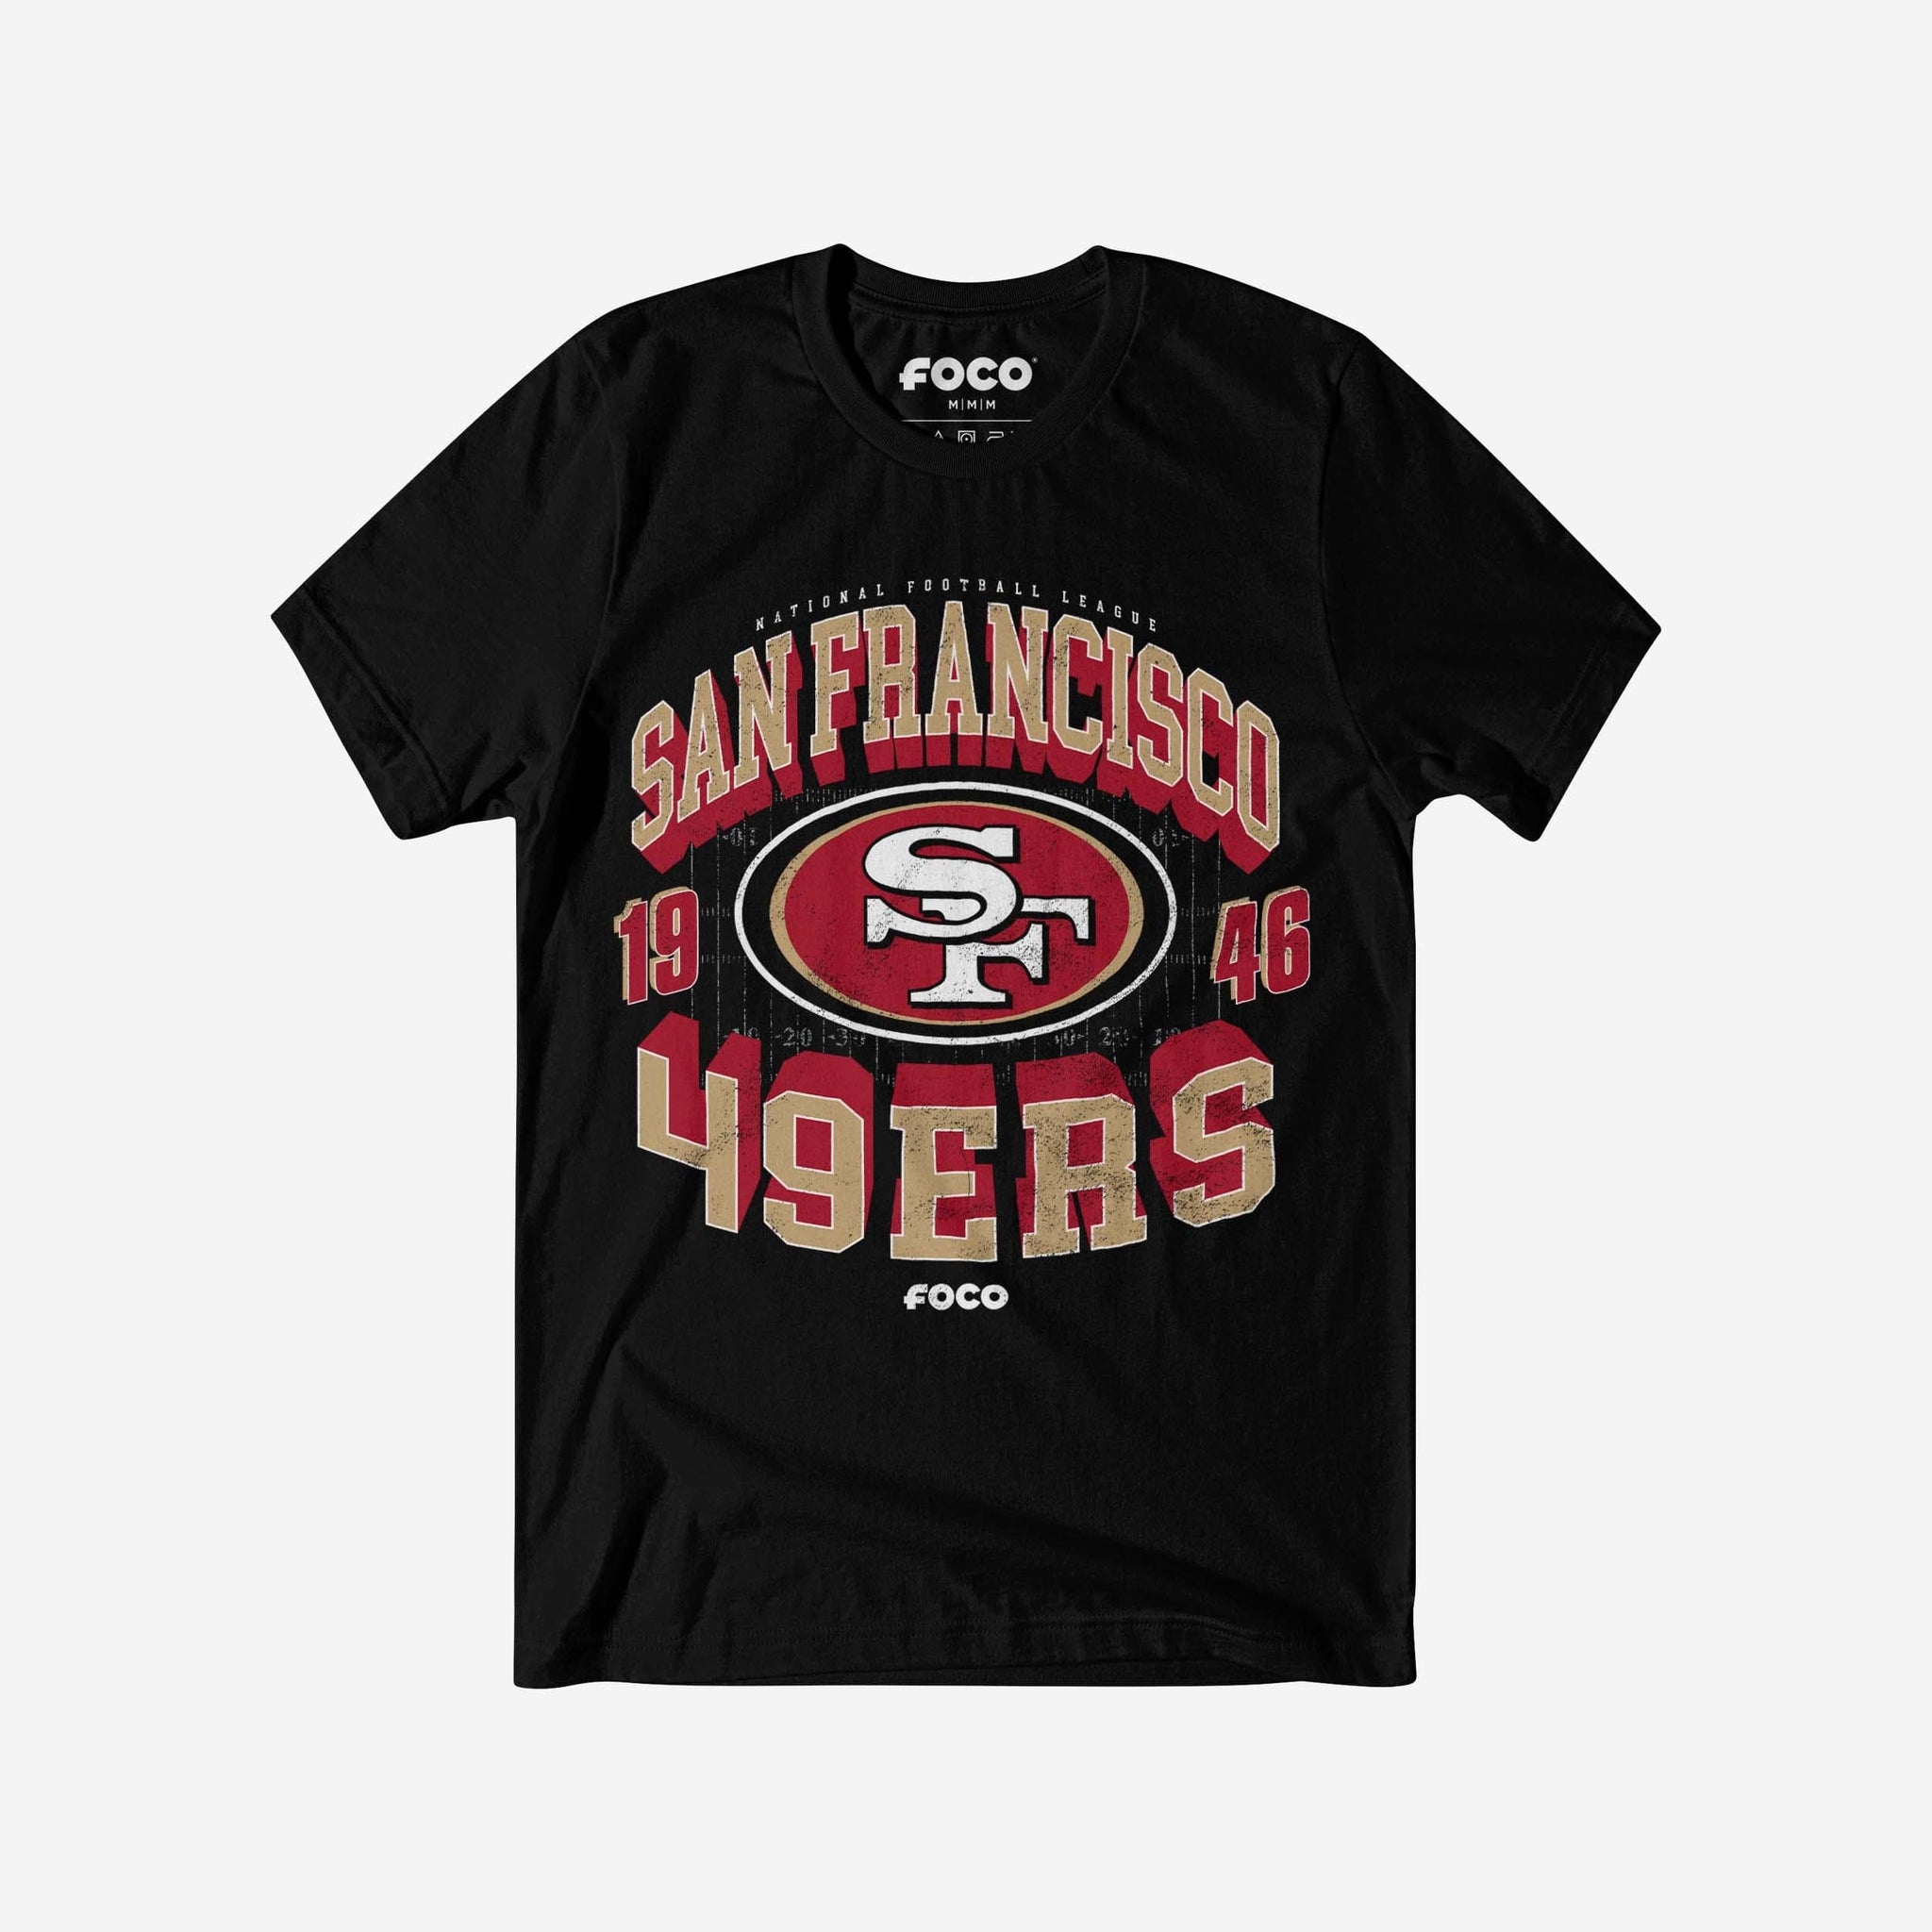 FOCO San Francisco 49ers Hoodies & Sweatshirts. San Francisco 49ers  Officially Licensed Sweatshirts.